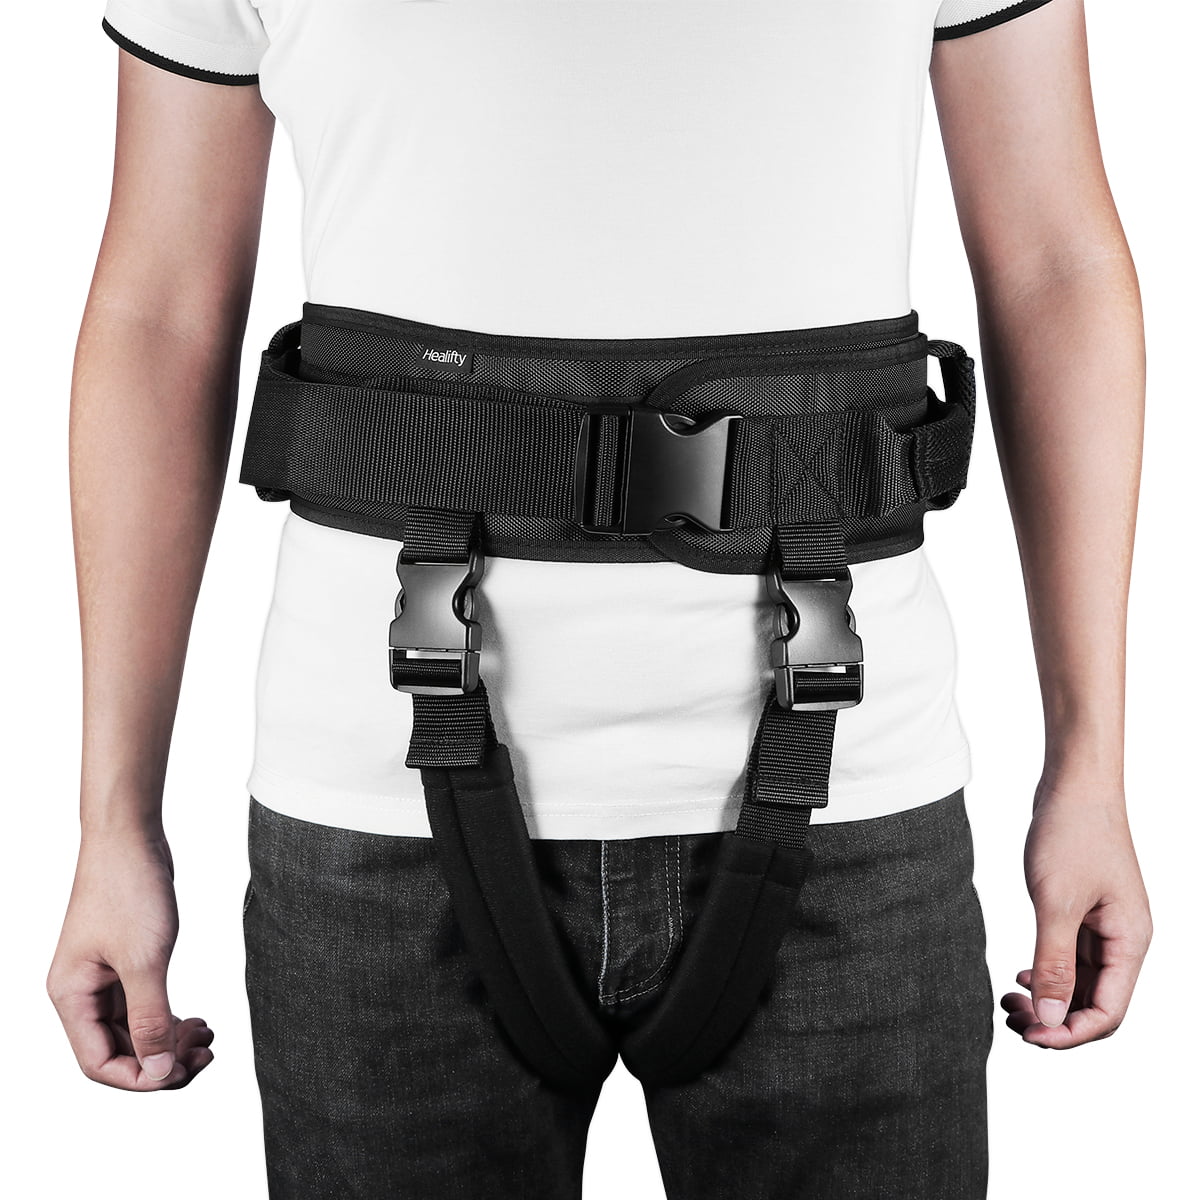 walking trouser belt